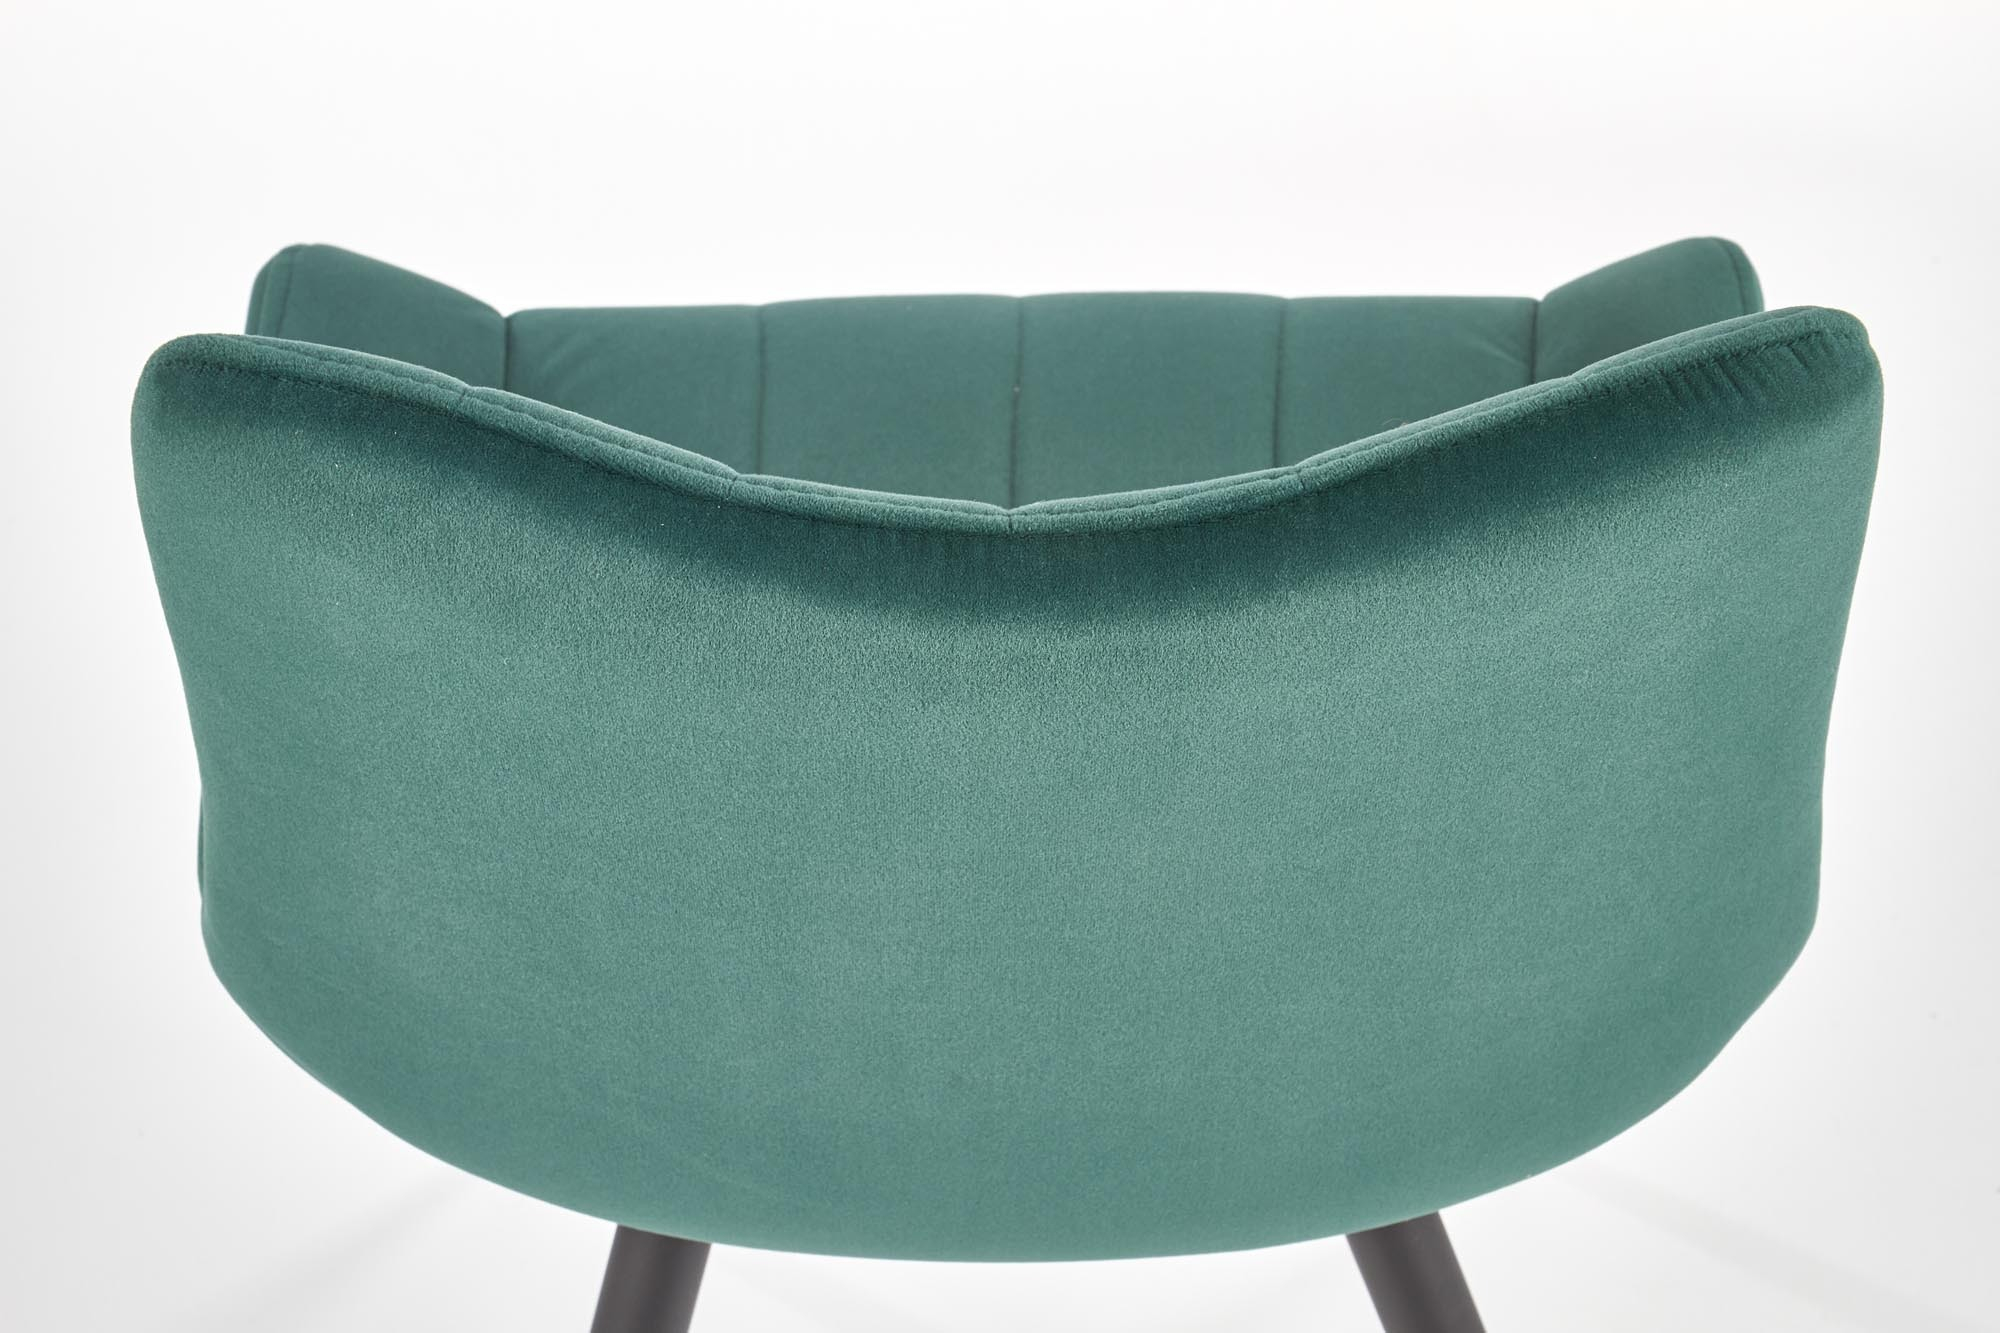 K388 krzesło ciemny zielony